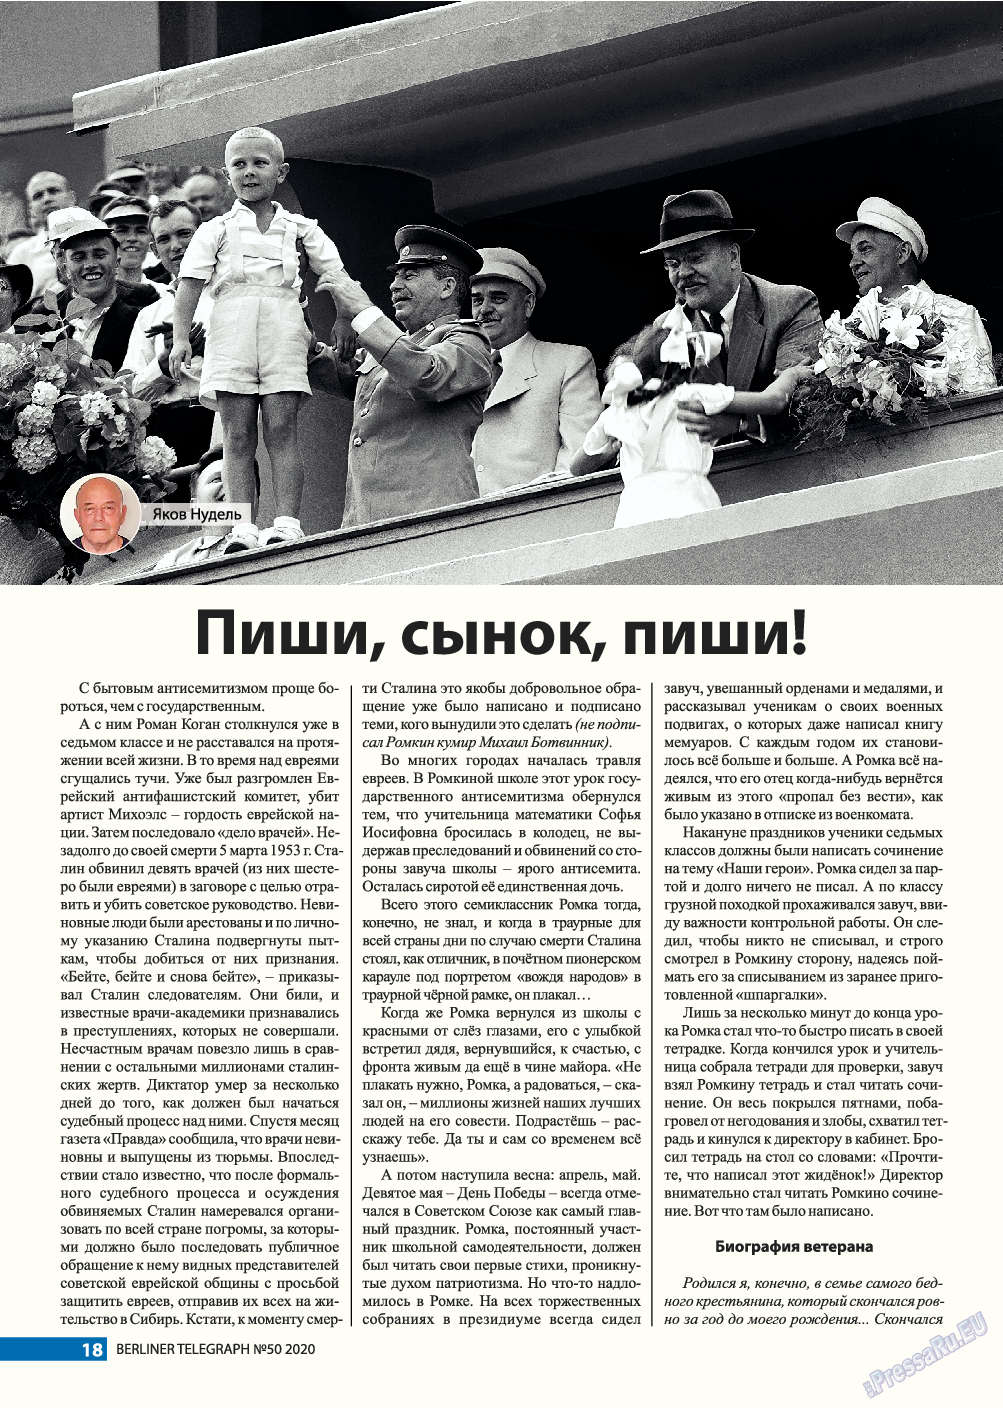 Берлинский телеграф, журнал. 2020 №50 стр.18